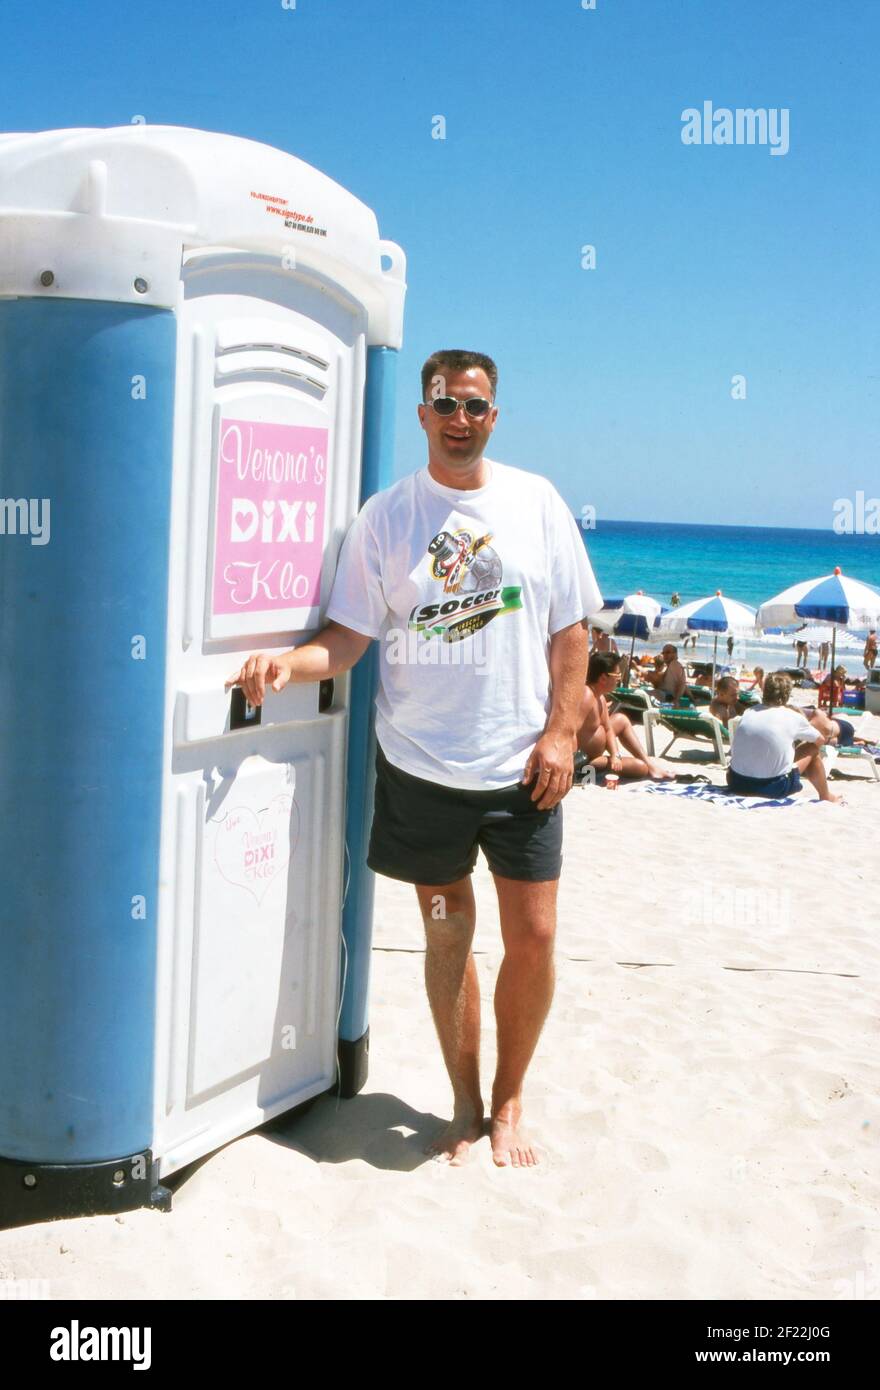 Touristen bezahlen für die Nutzung vom Dixi Klo vom Auftirtt von Verona Feldbusch bei "Big Brother" als Touristenattraktion am Strand von Mallorca, Spanien 2000. Stock Photo